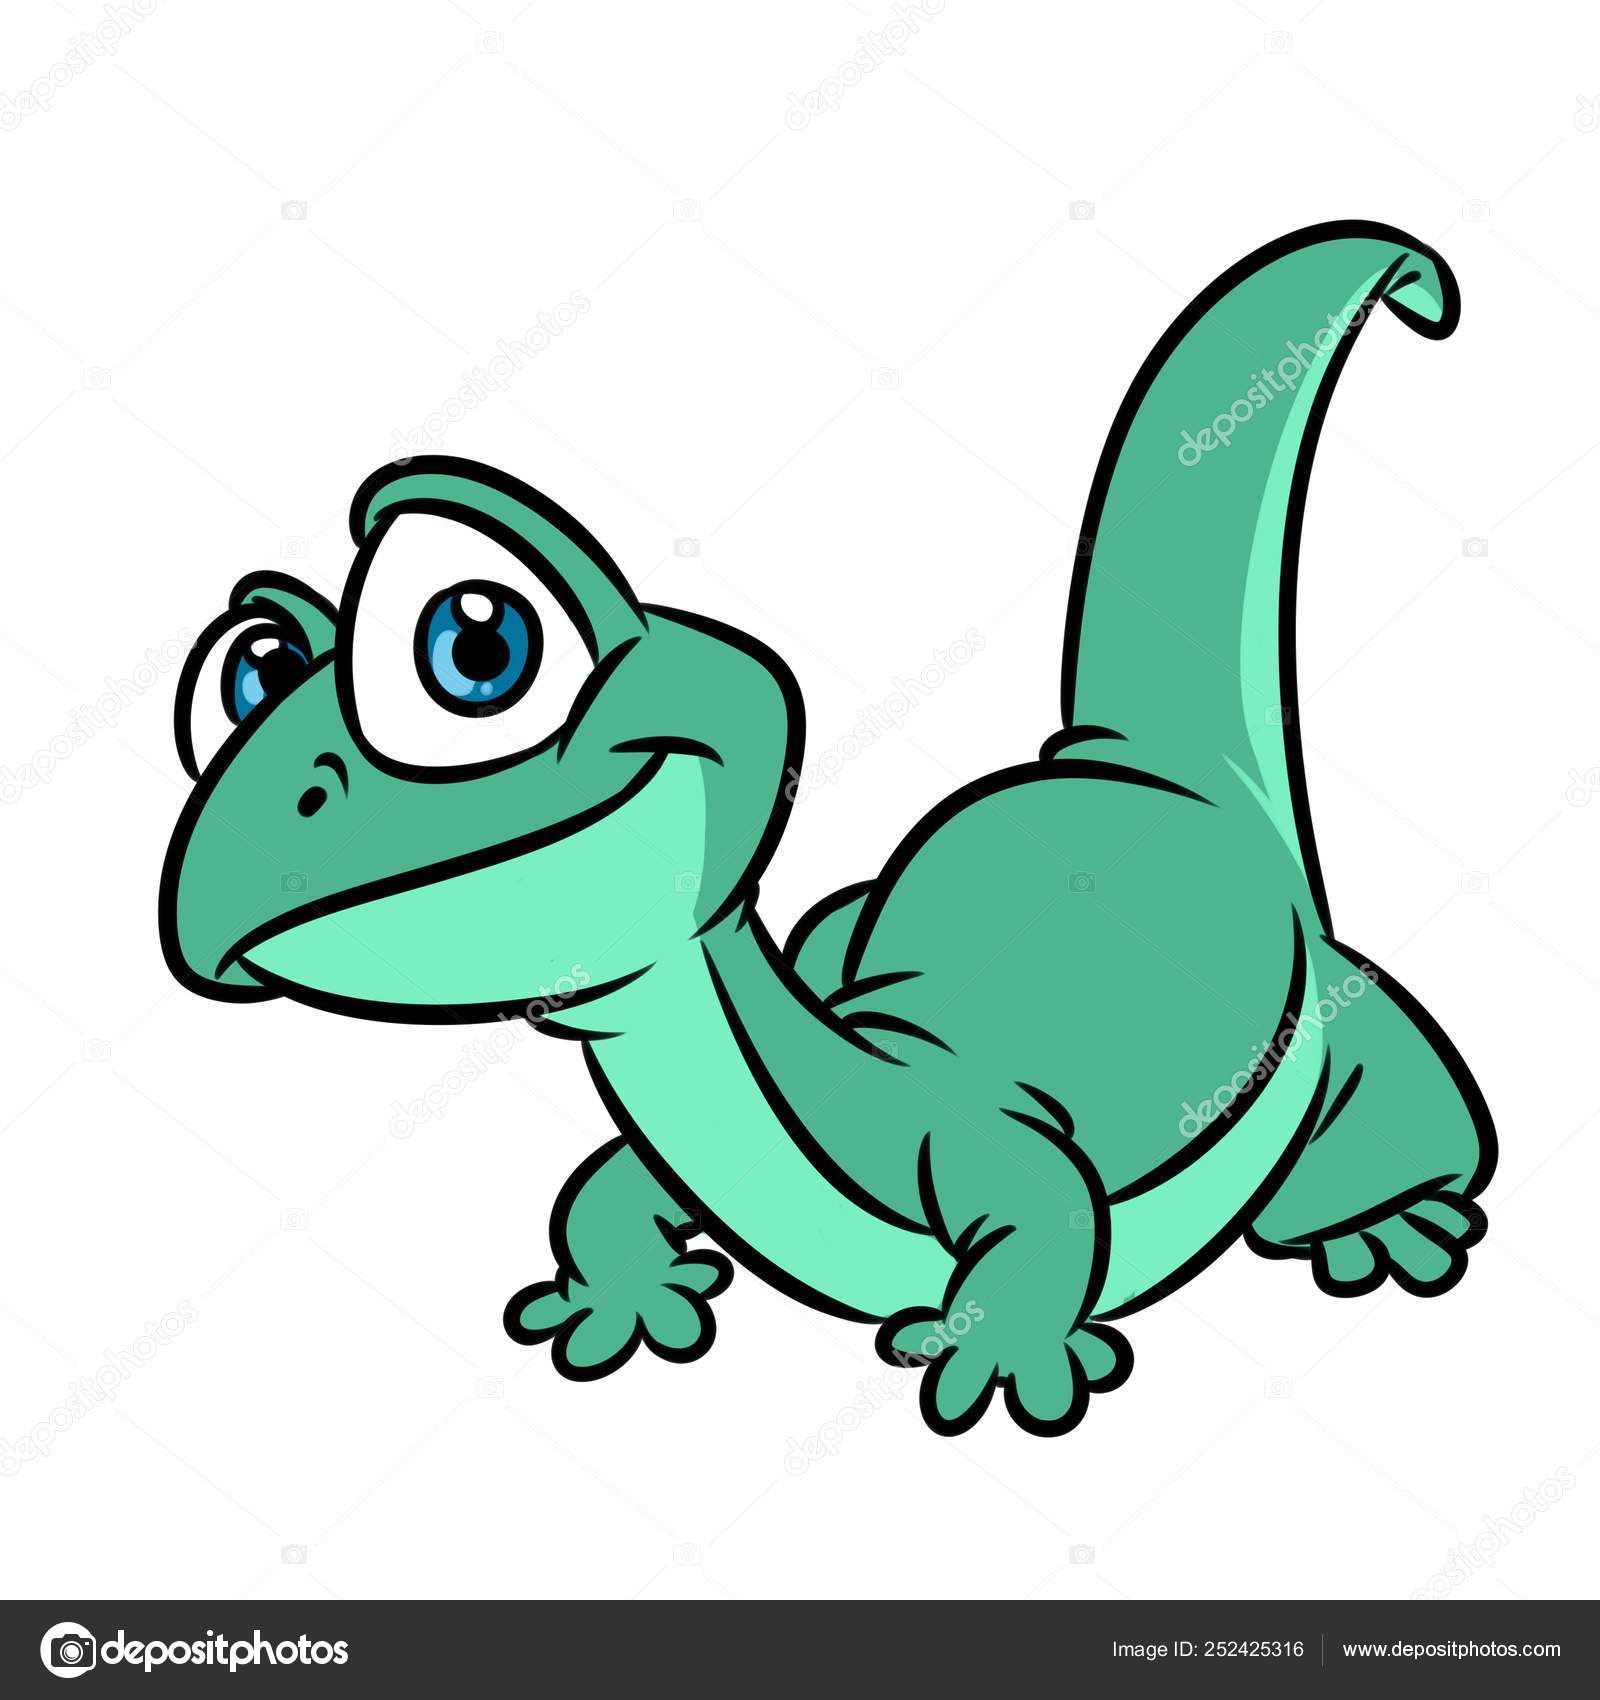 Lizard cartoon Stock Photos, Royalty Free Lizard cartoon Images |  Depositphotos